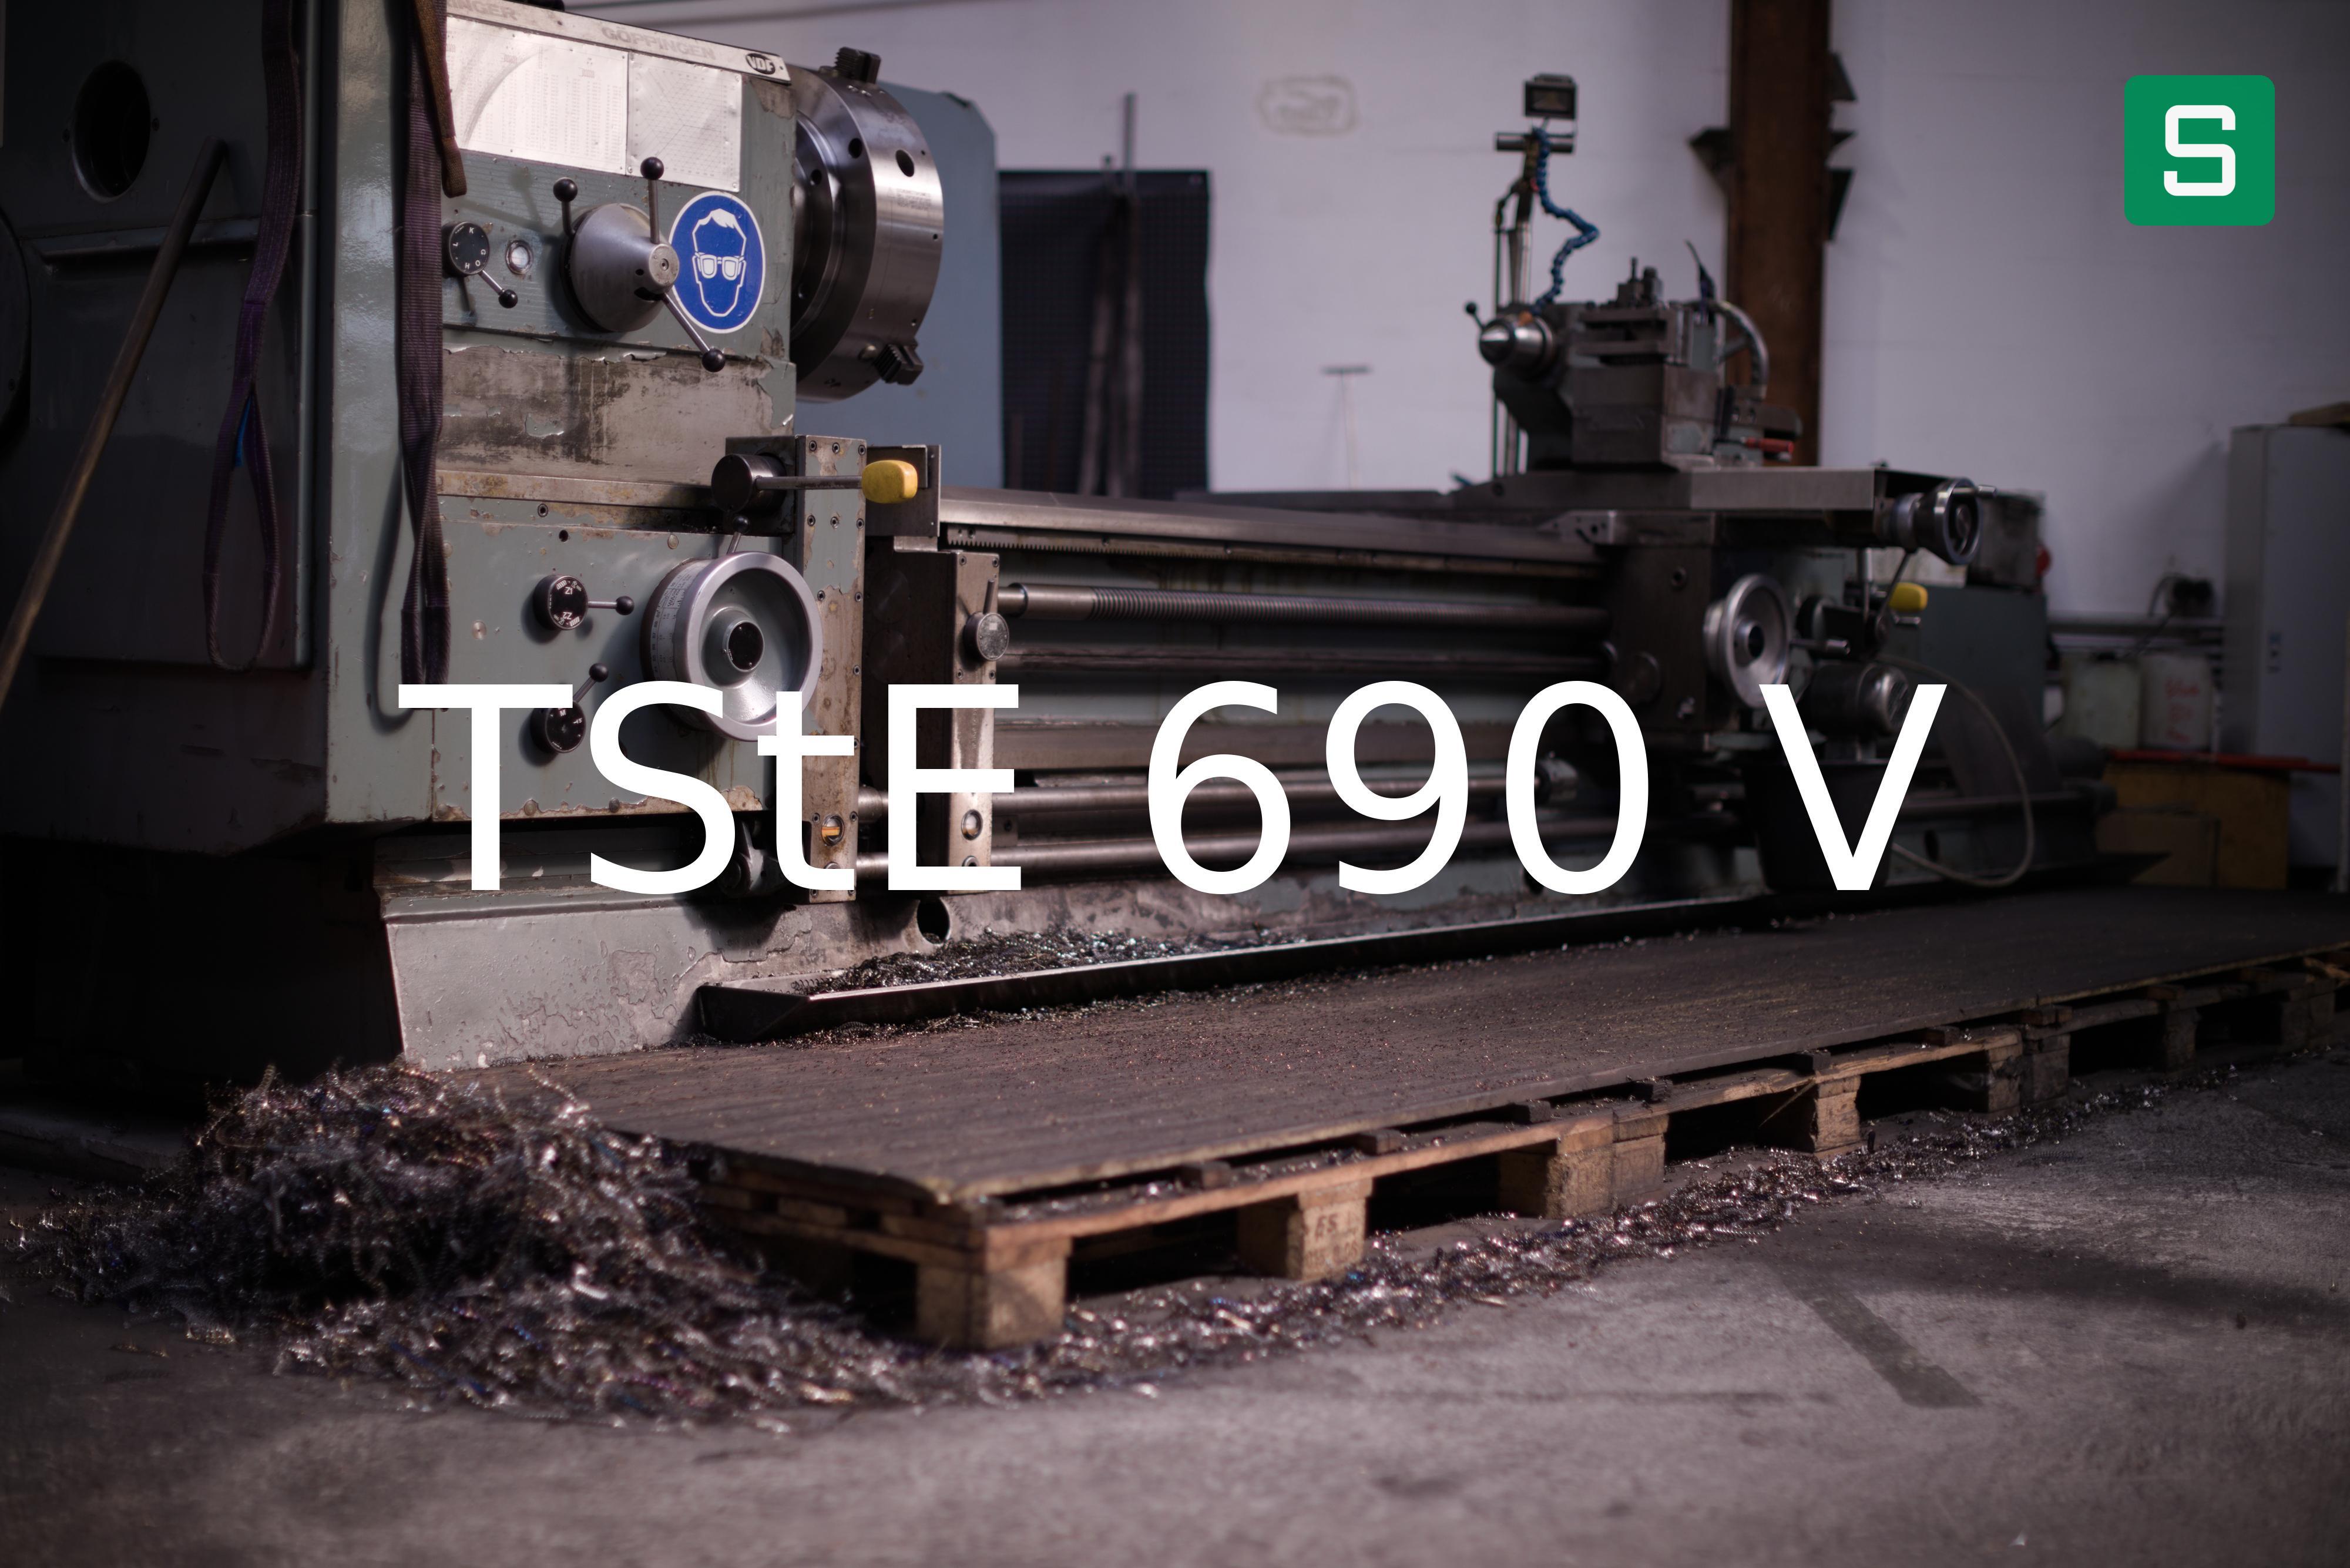 Steel Material: TStE 690 V